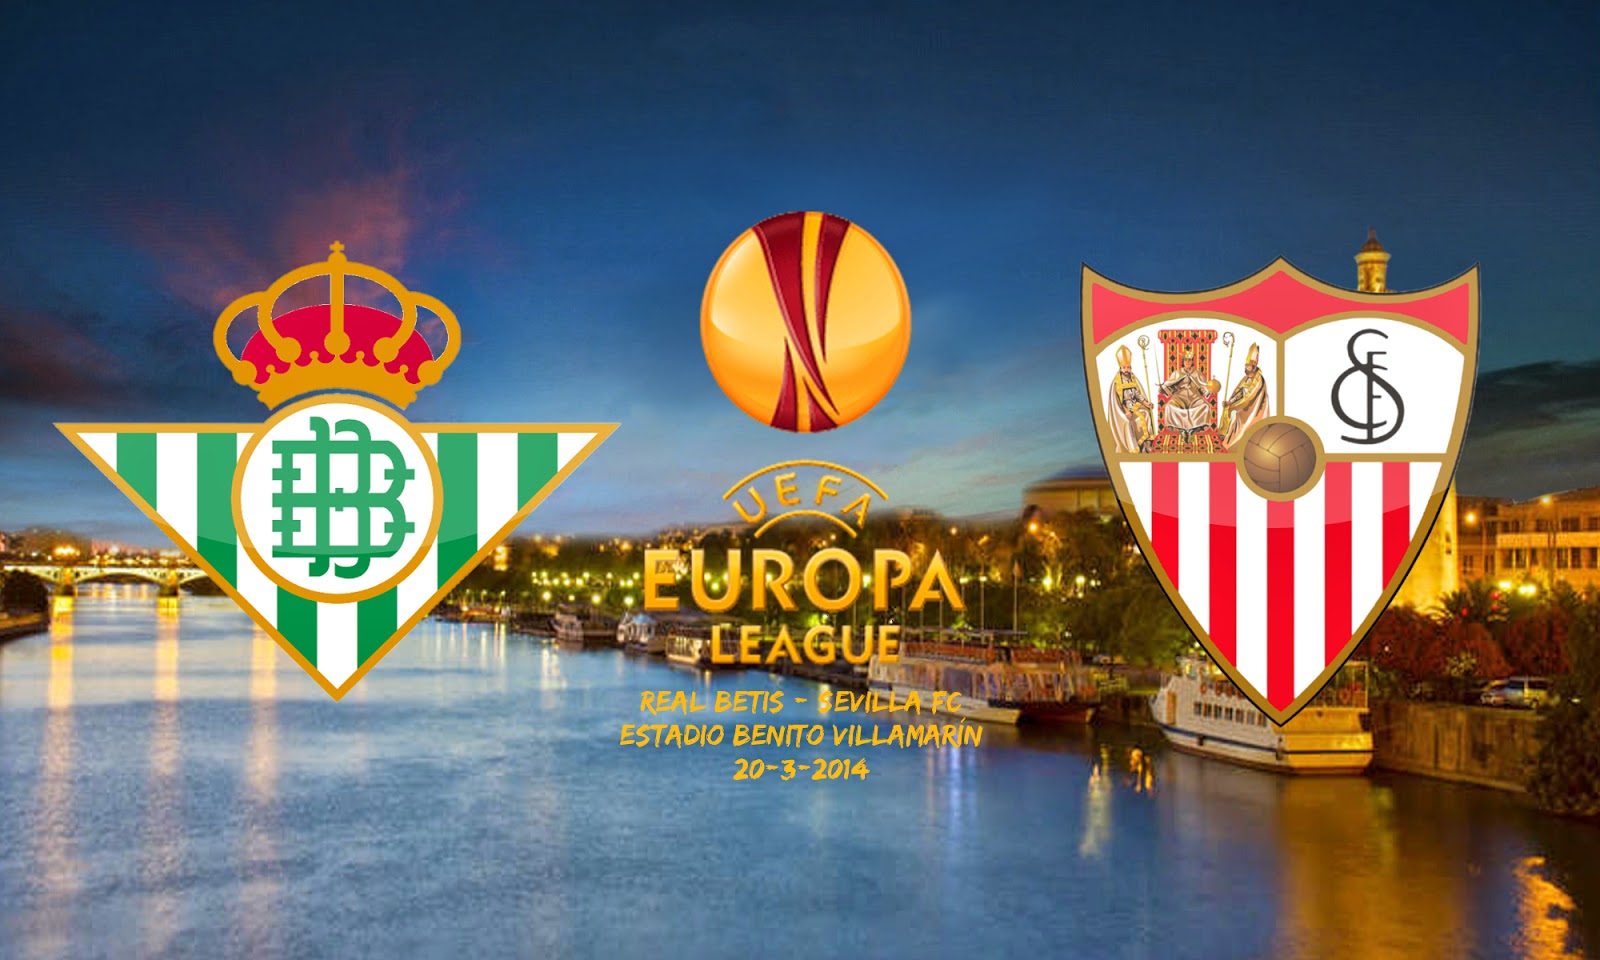 Sevilla Fc I - Sevilla Fc , HD Wallpaper & Backgrounds